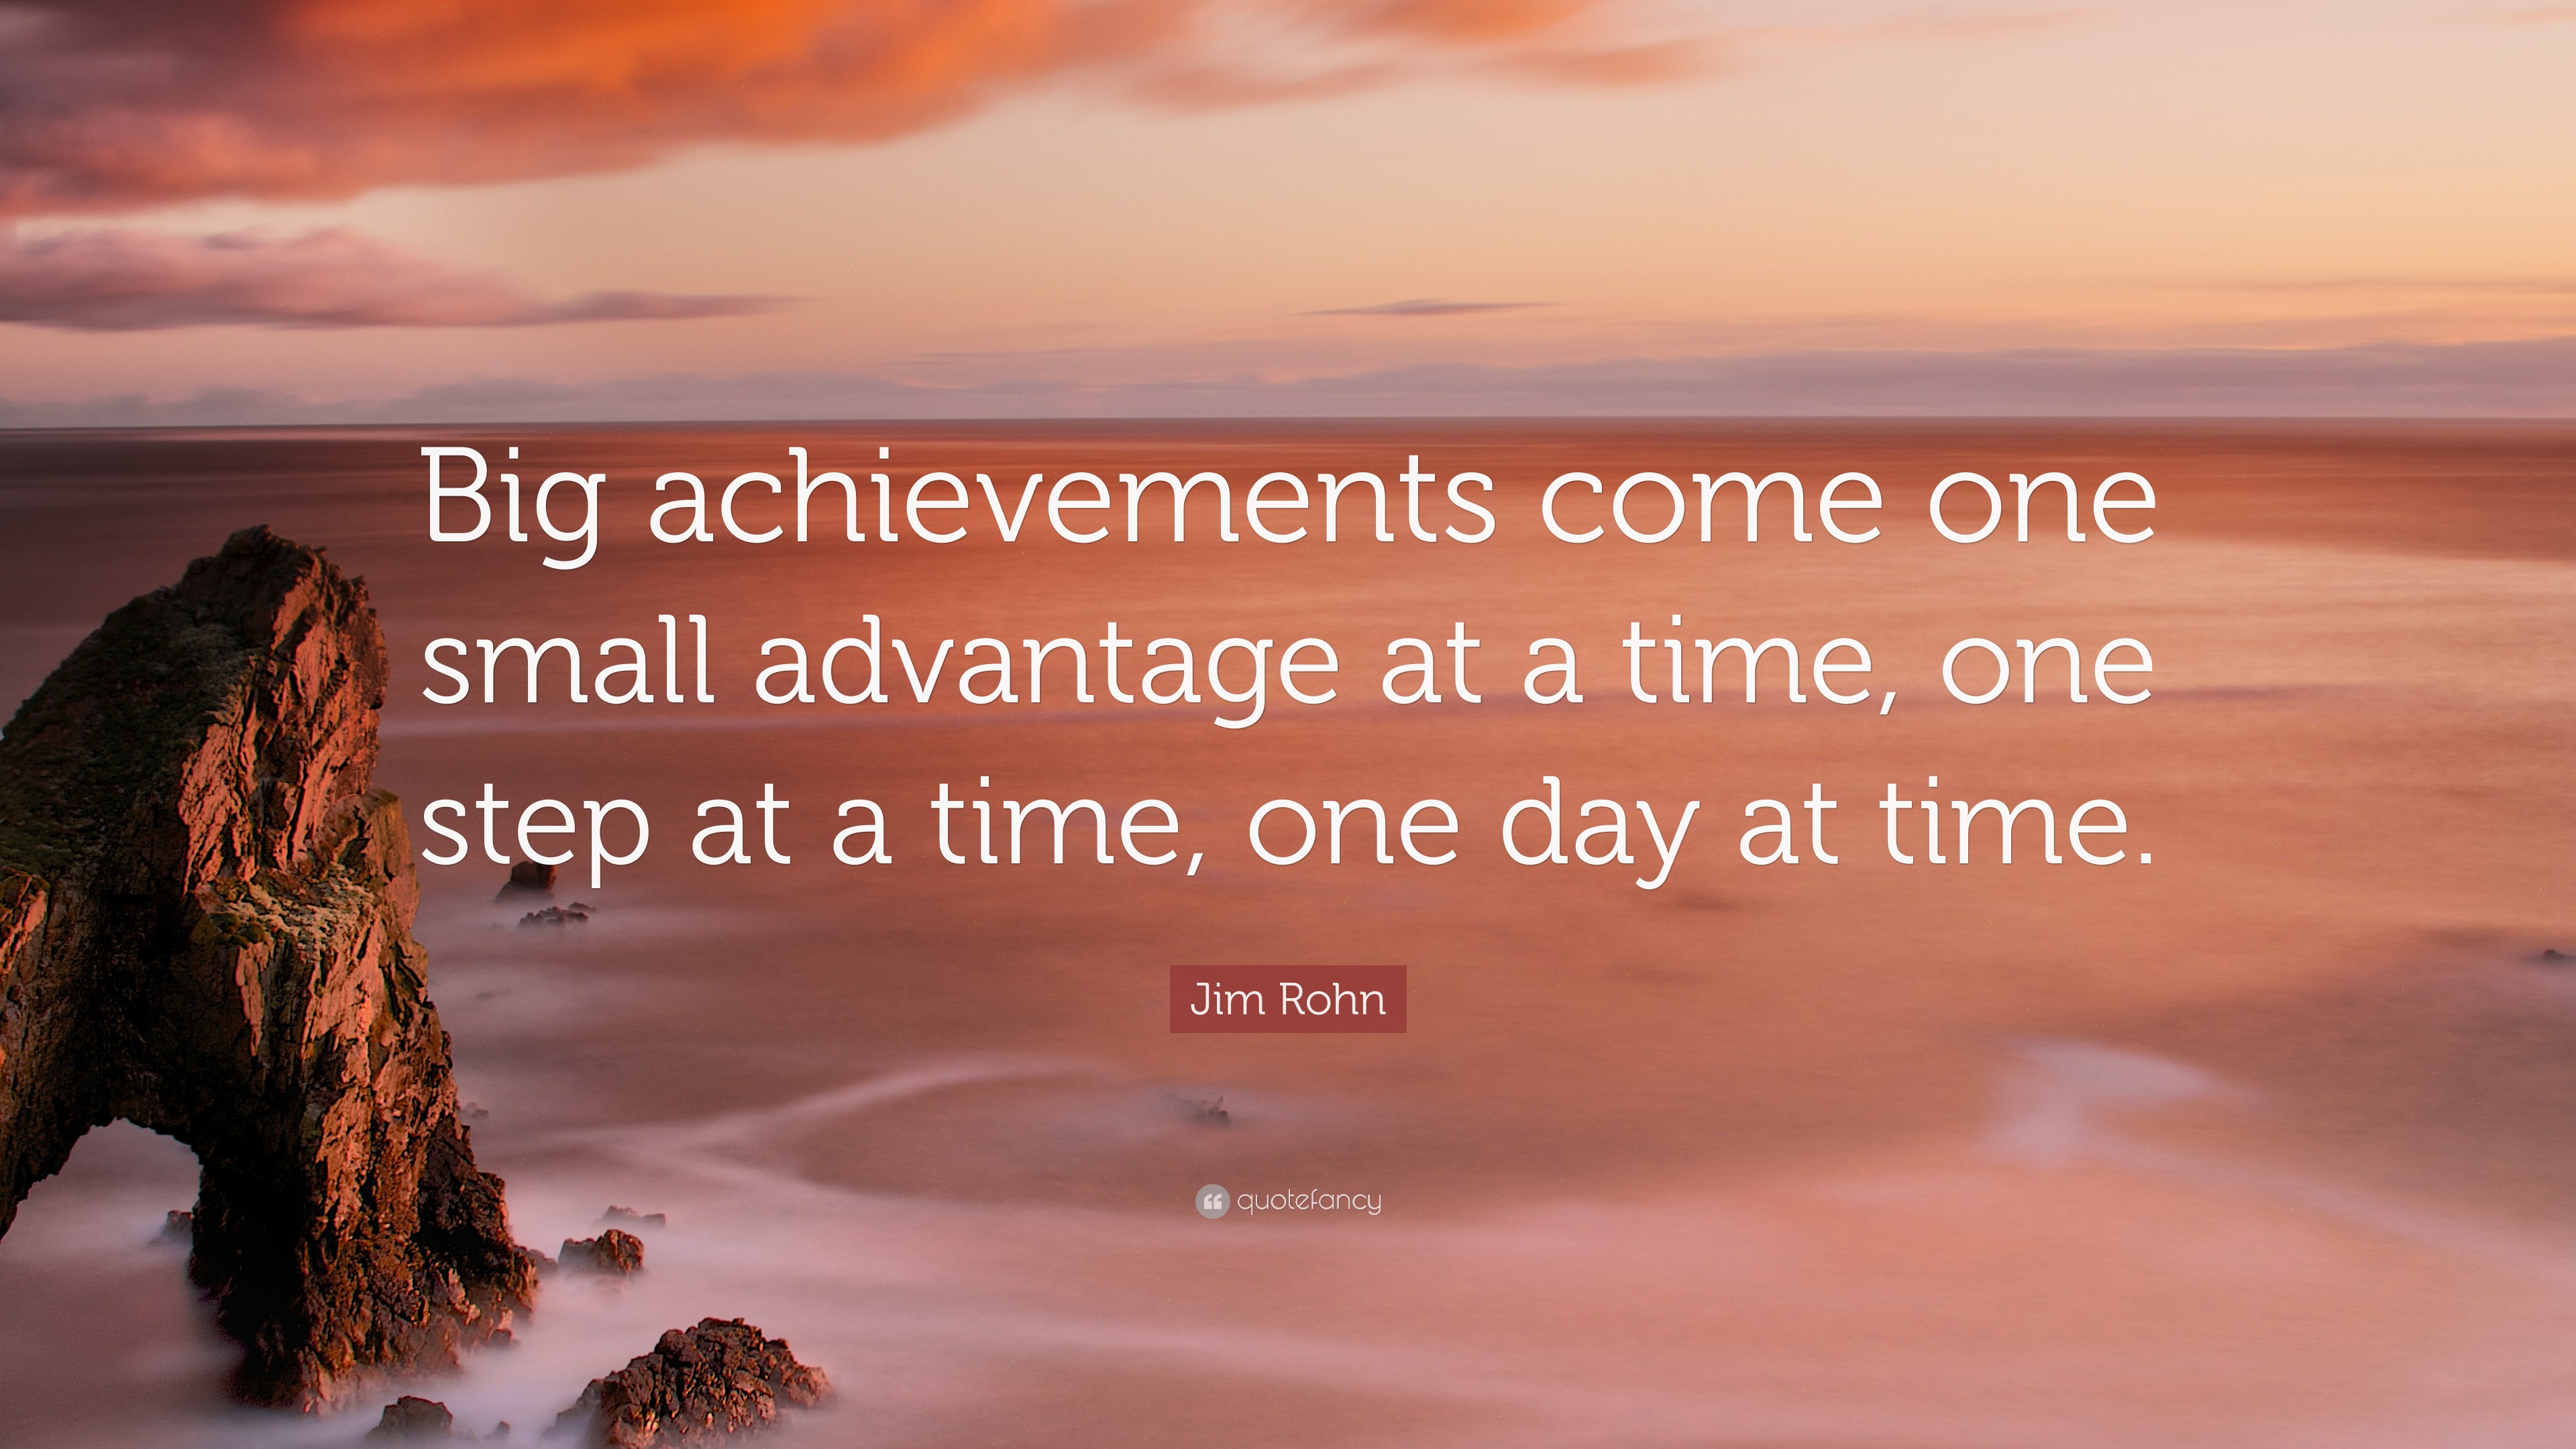 Jim Rohn Quote: “Big achievements come one small advantage at a time